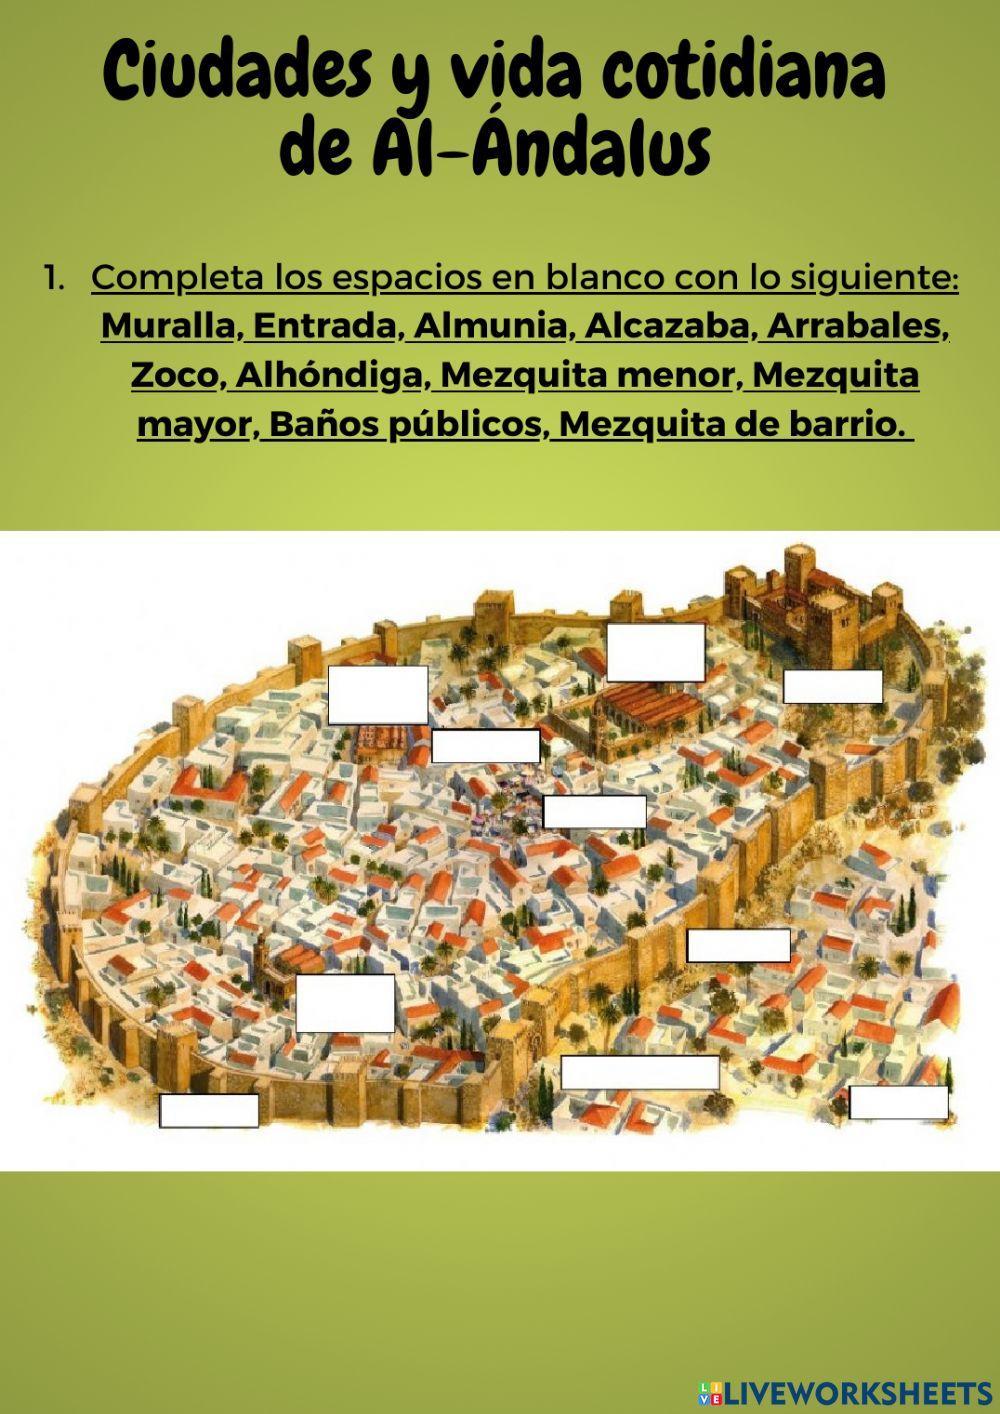 Ciudades y vida cotidiana andalusí